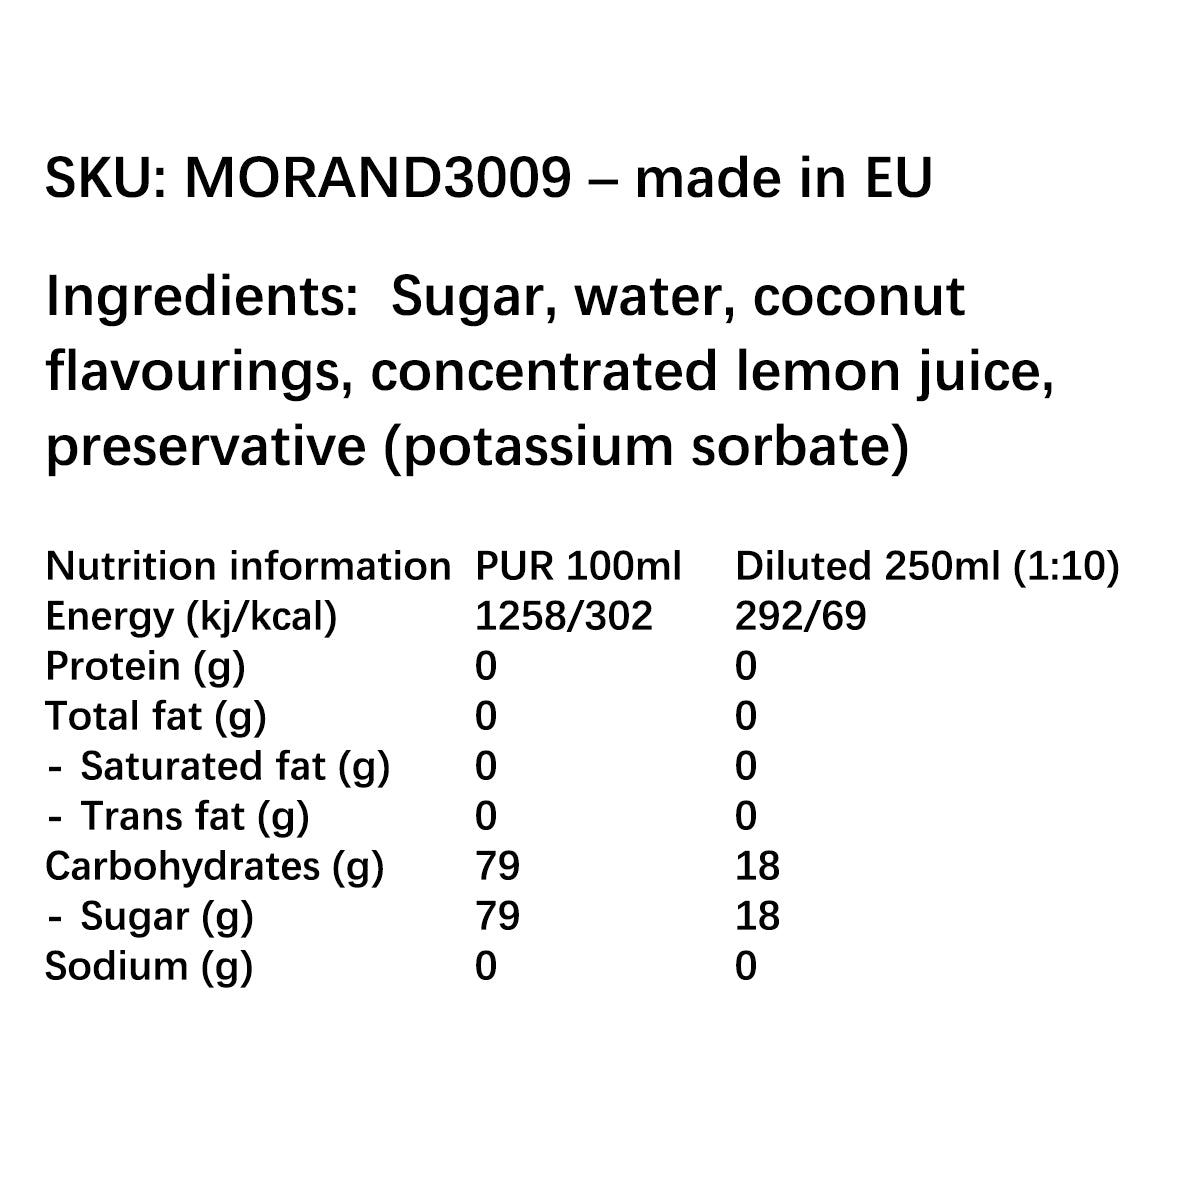 MORAND3009 ingredients | Switzerluxe